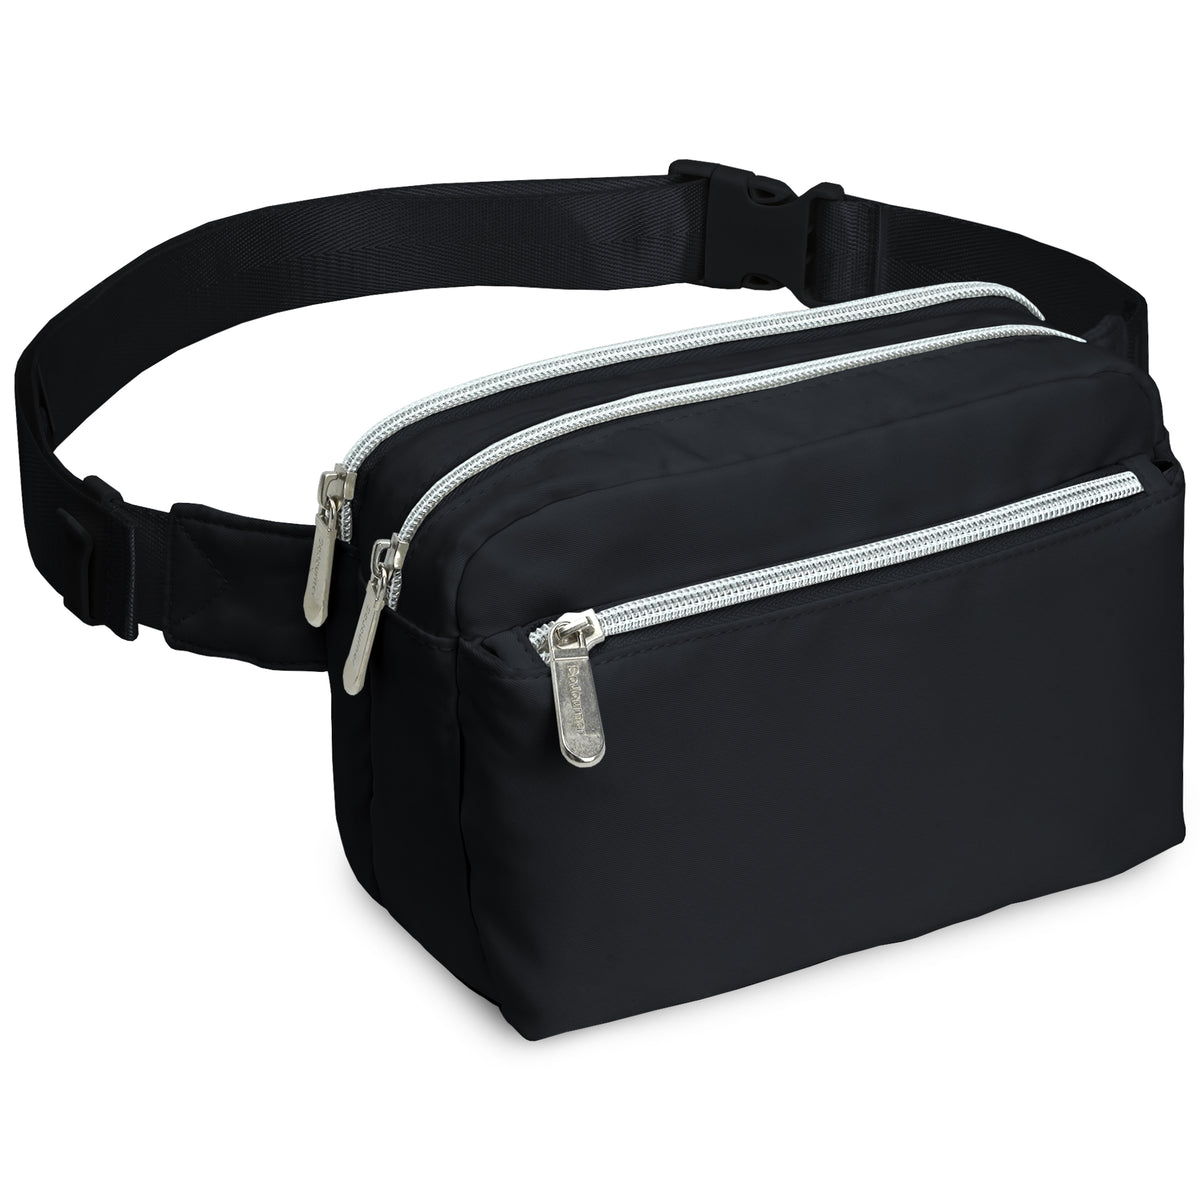 Black Fanny Pack Belt Bag for Women I Cross Body Fanny Packs for Women - Crossbody Bags small Waist Bag Men